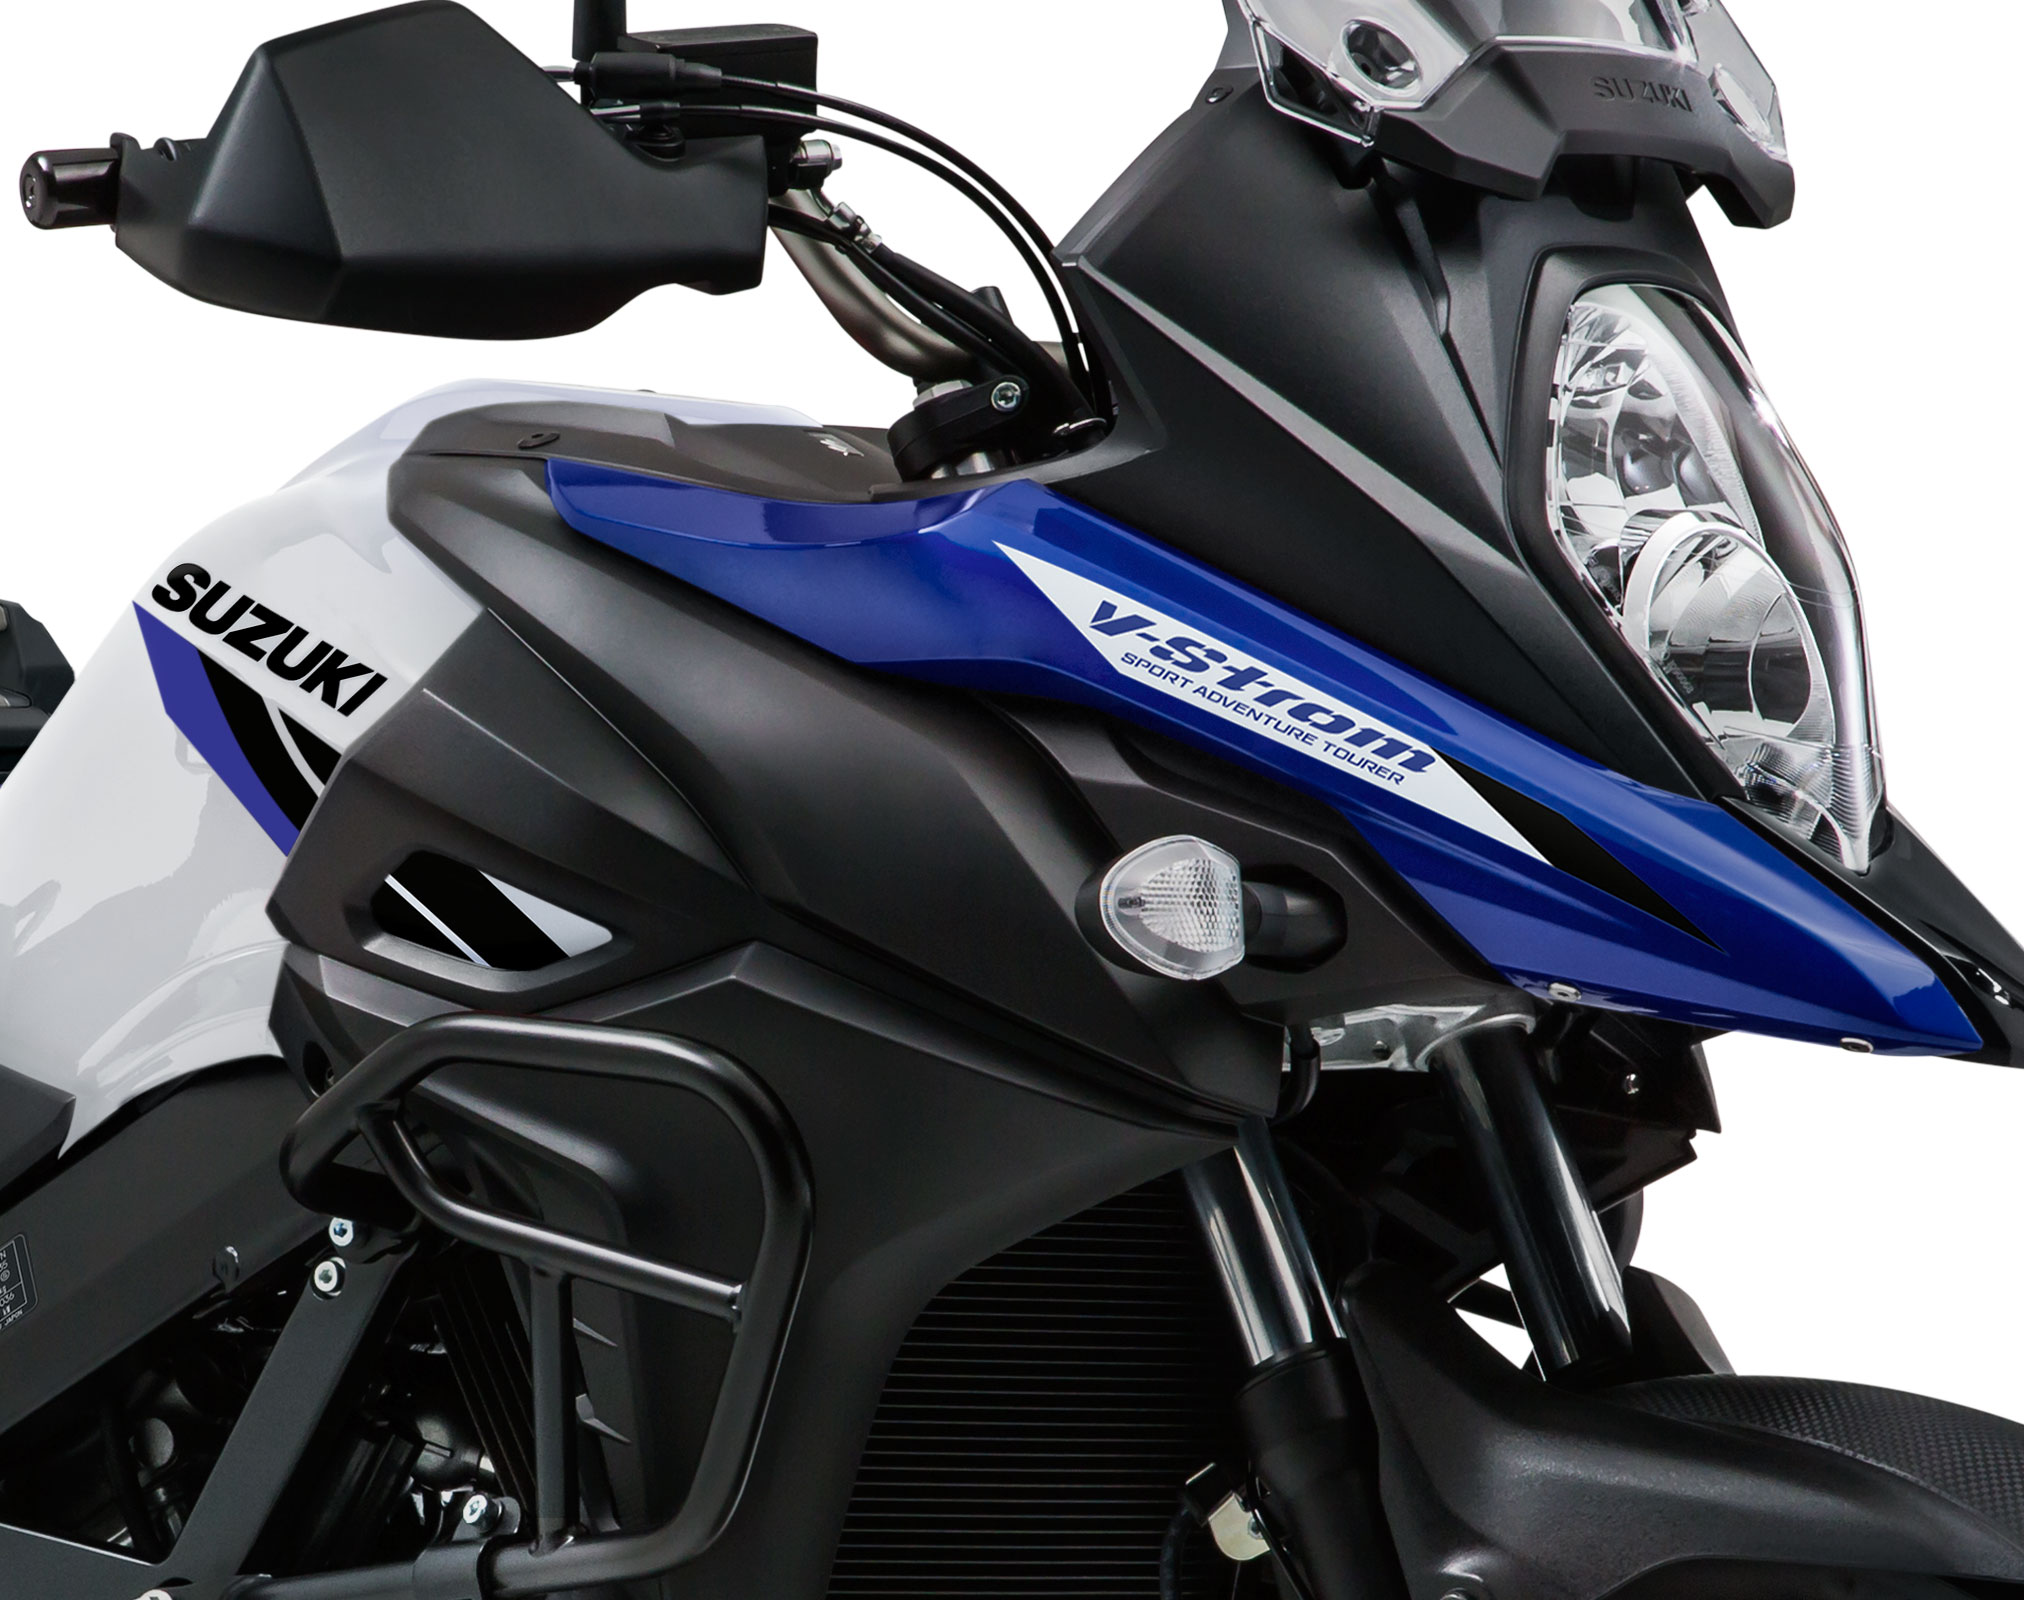 Suzuki DL650 Vstrom - Best Allround Motorcycle Ever? 